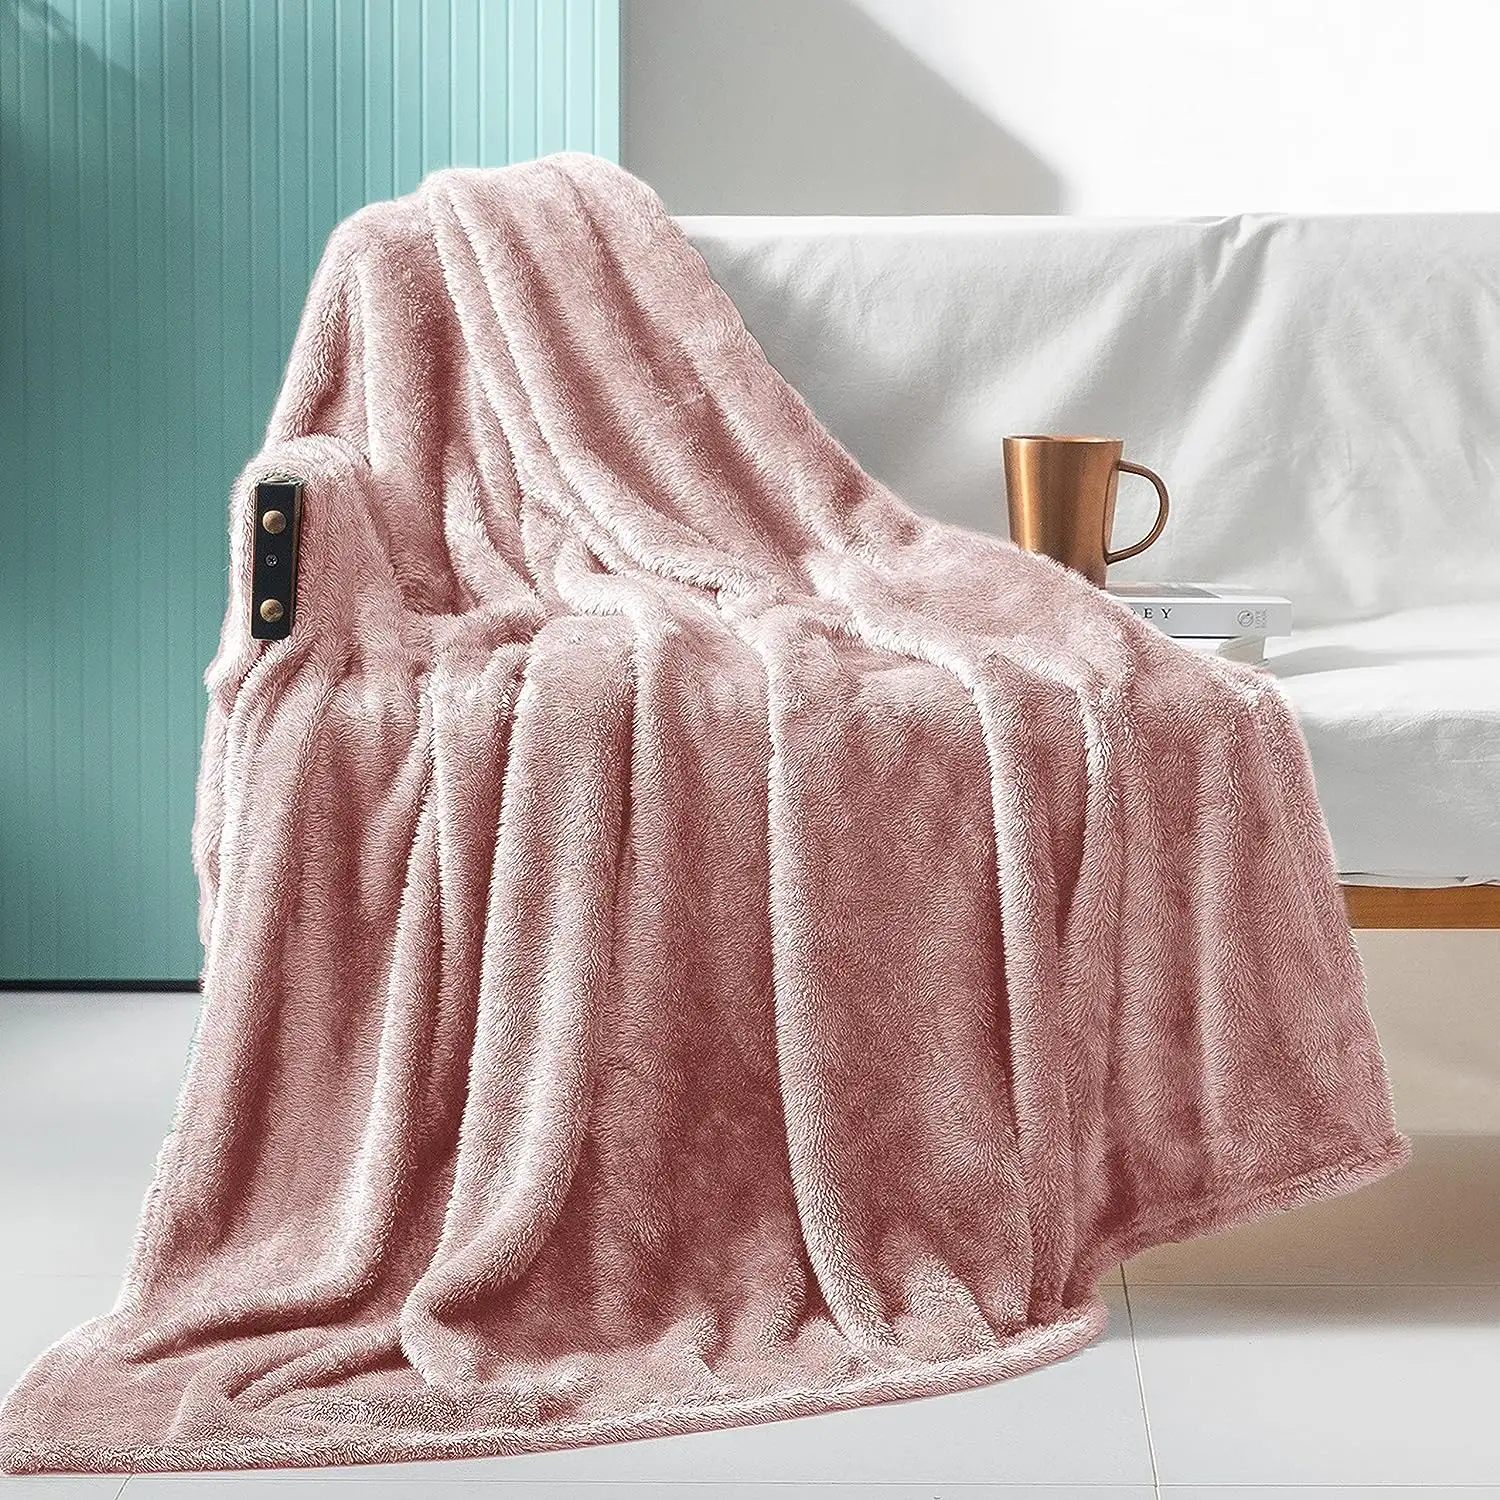 소파, 침대용 슈퍼 소프트 푹신한 따뜻한 담요 플러시 양털 담요